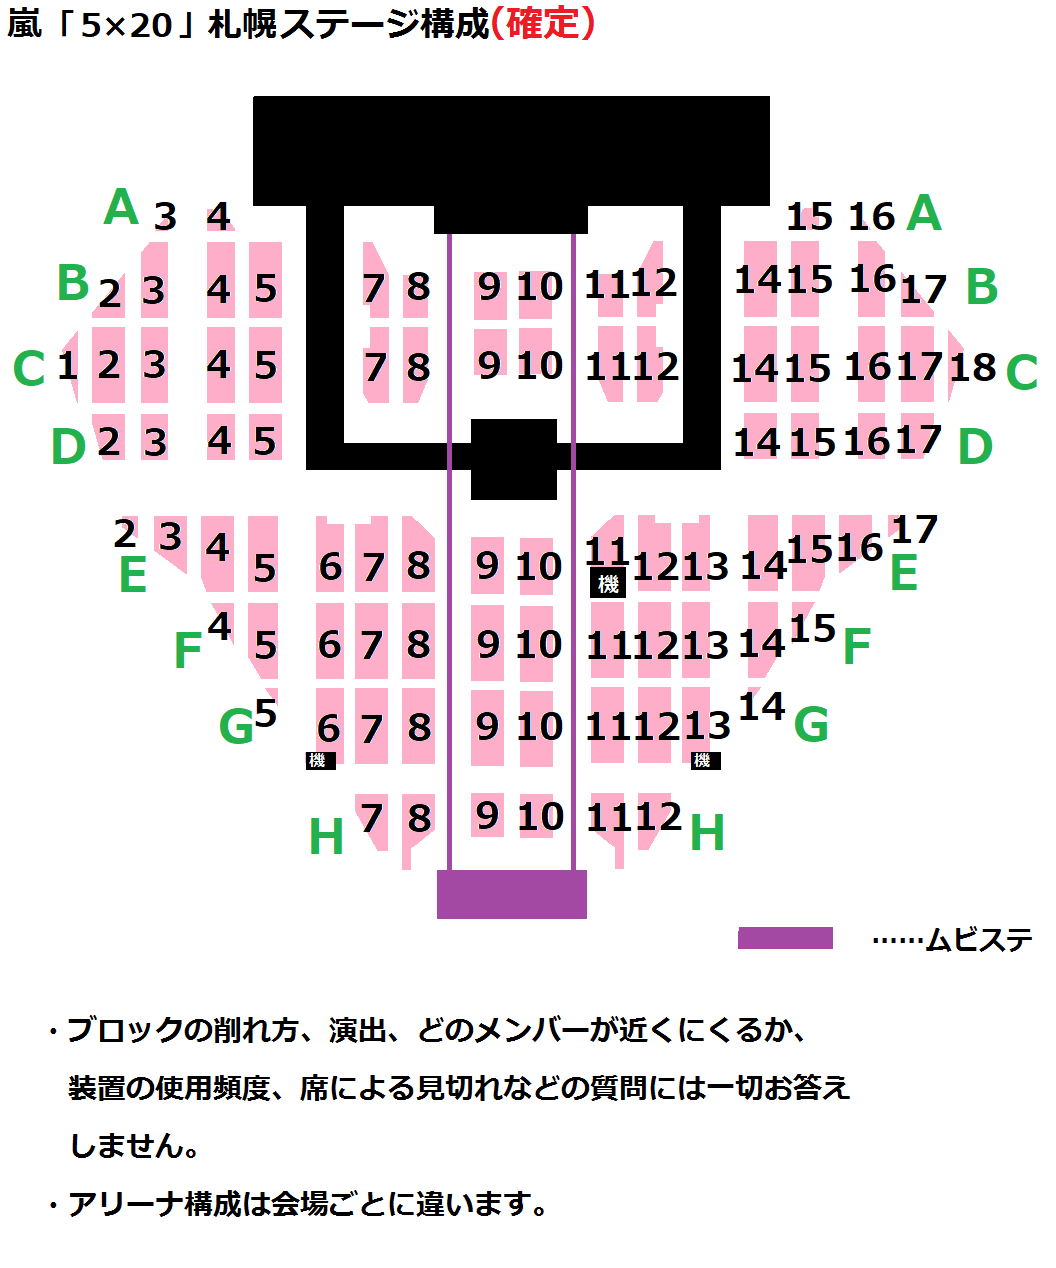 Arashi Anniversary Tour 5 20 嵐コンデータまとめ Wiki